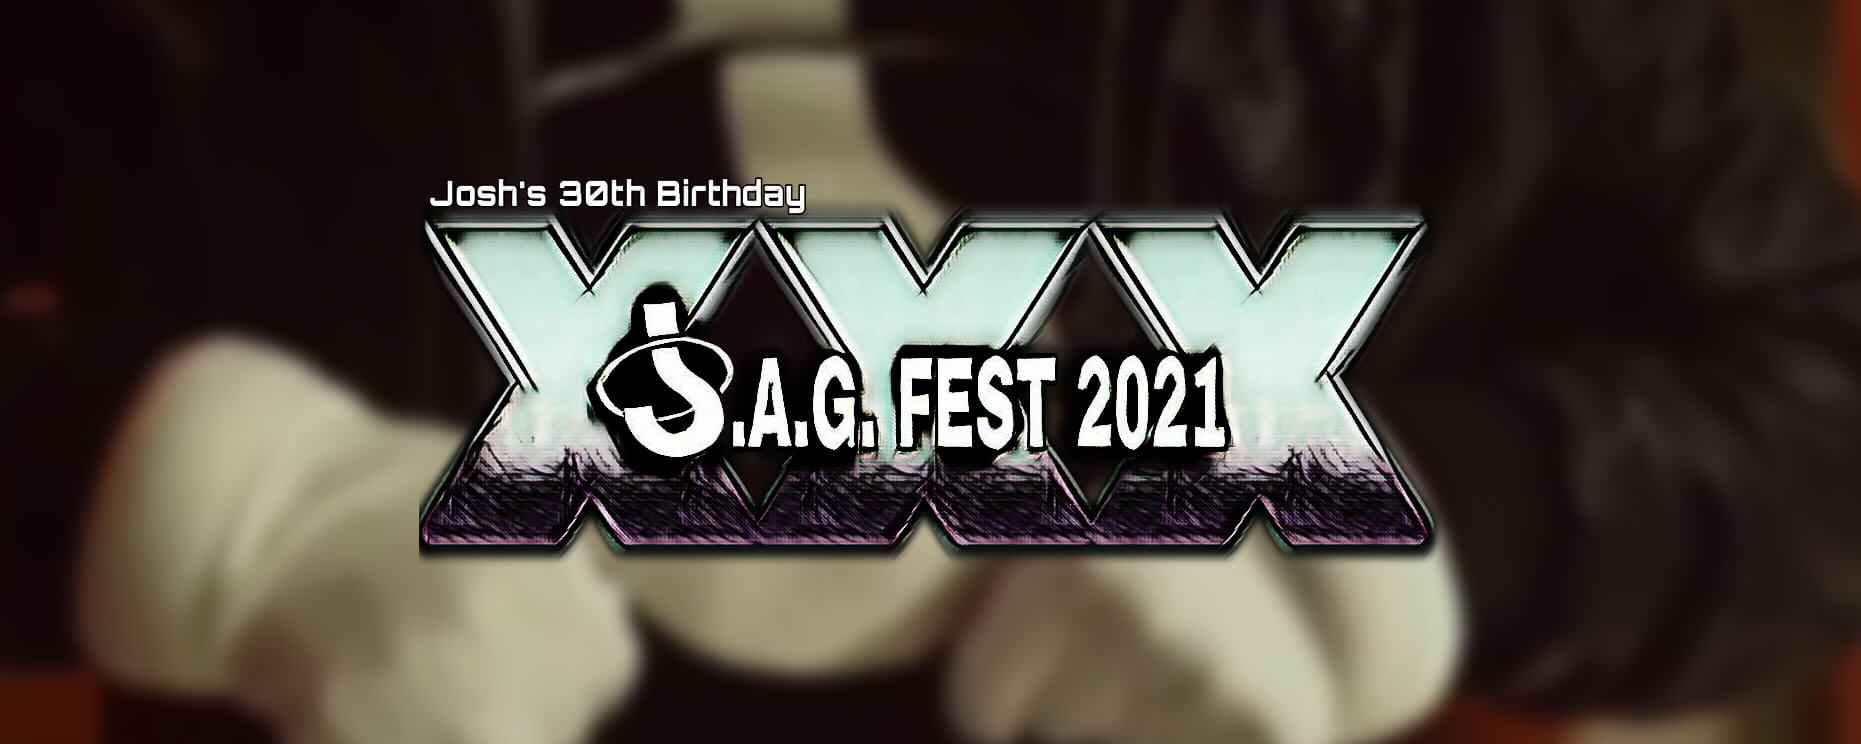 JAGFest 2021 Announcement Banner